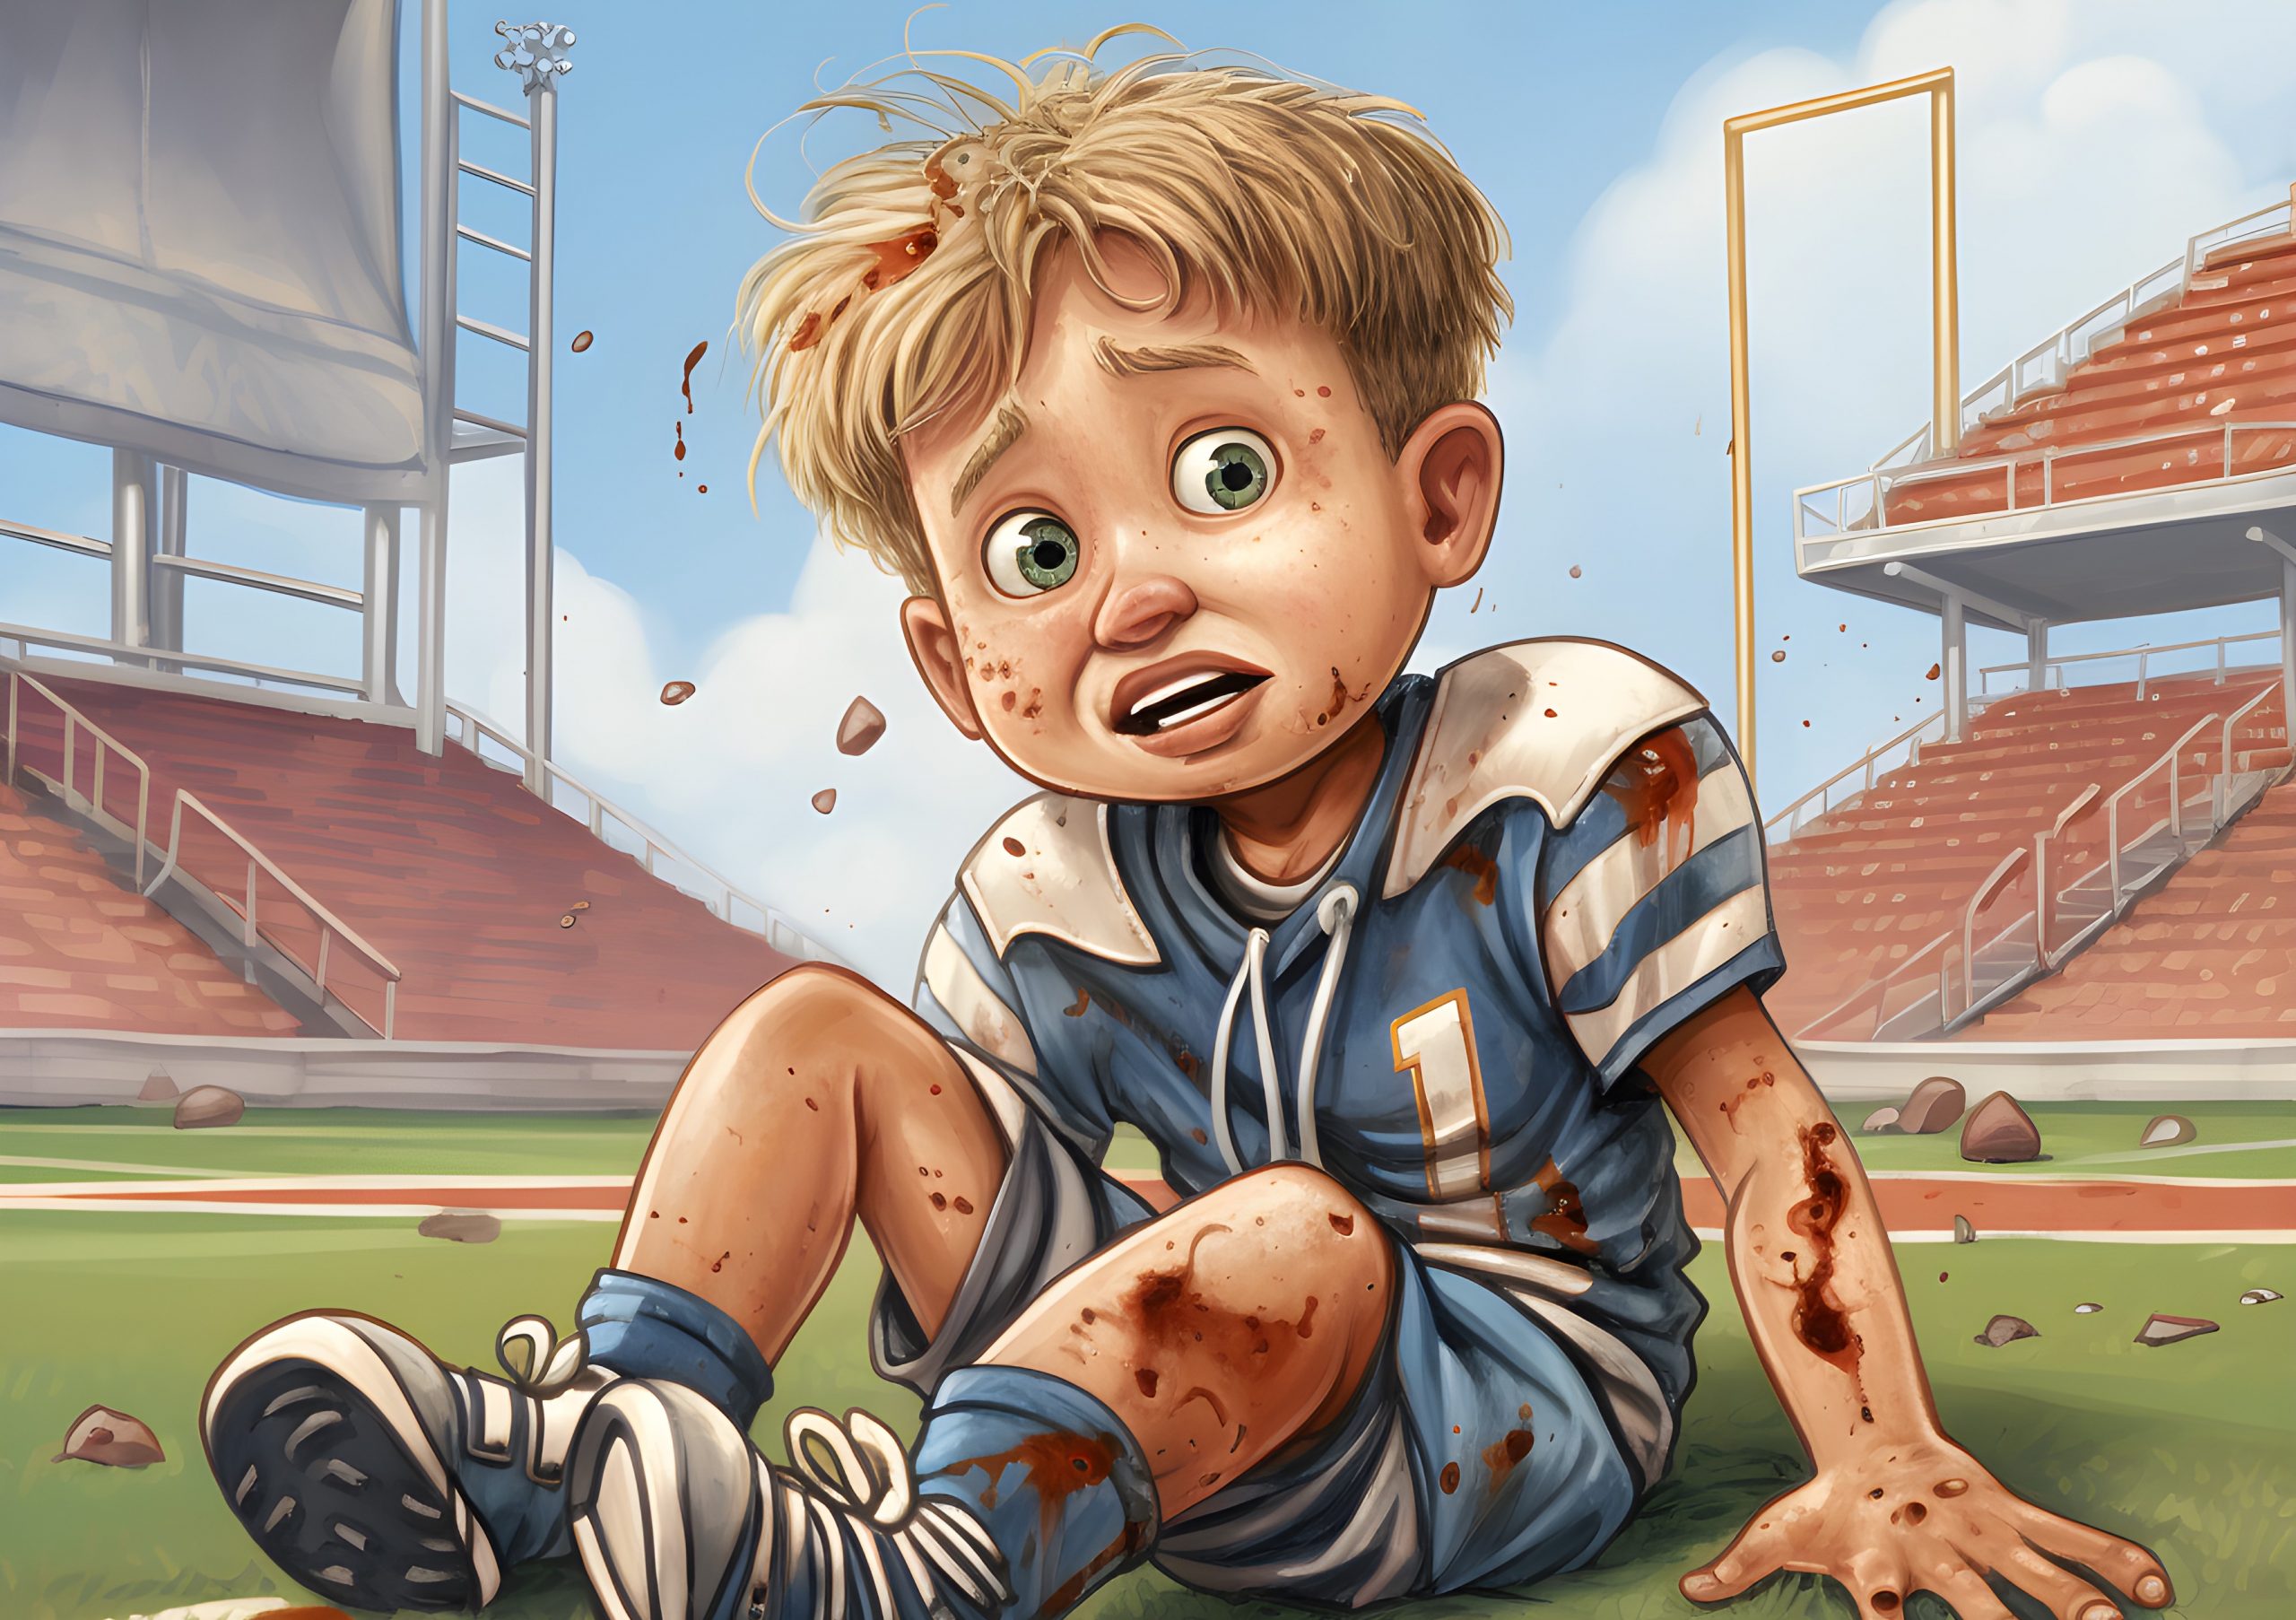 FootballR - NFL - Eine Illustration eines Jungen, der bei einem Footballspiel auf dem Boden sitzt und eine Erklärung für Kinder zum Thema Kreuzbandriss liefert.